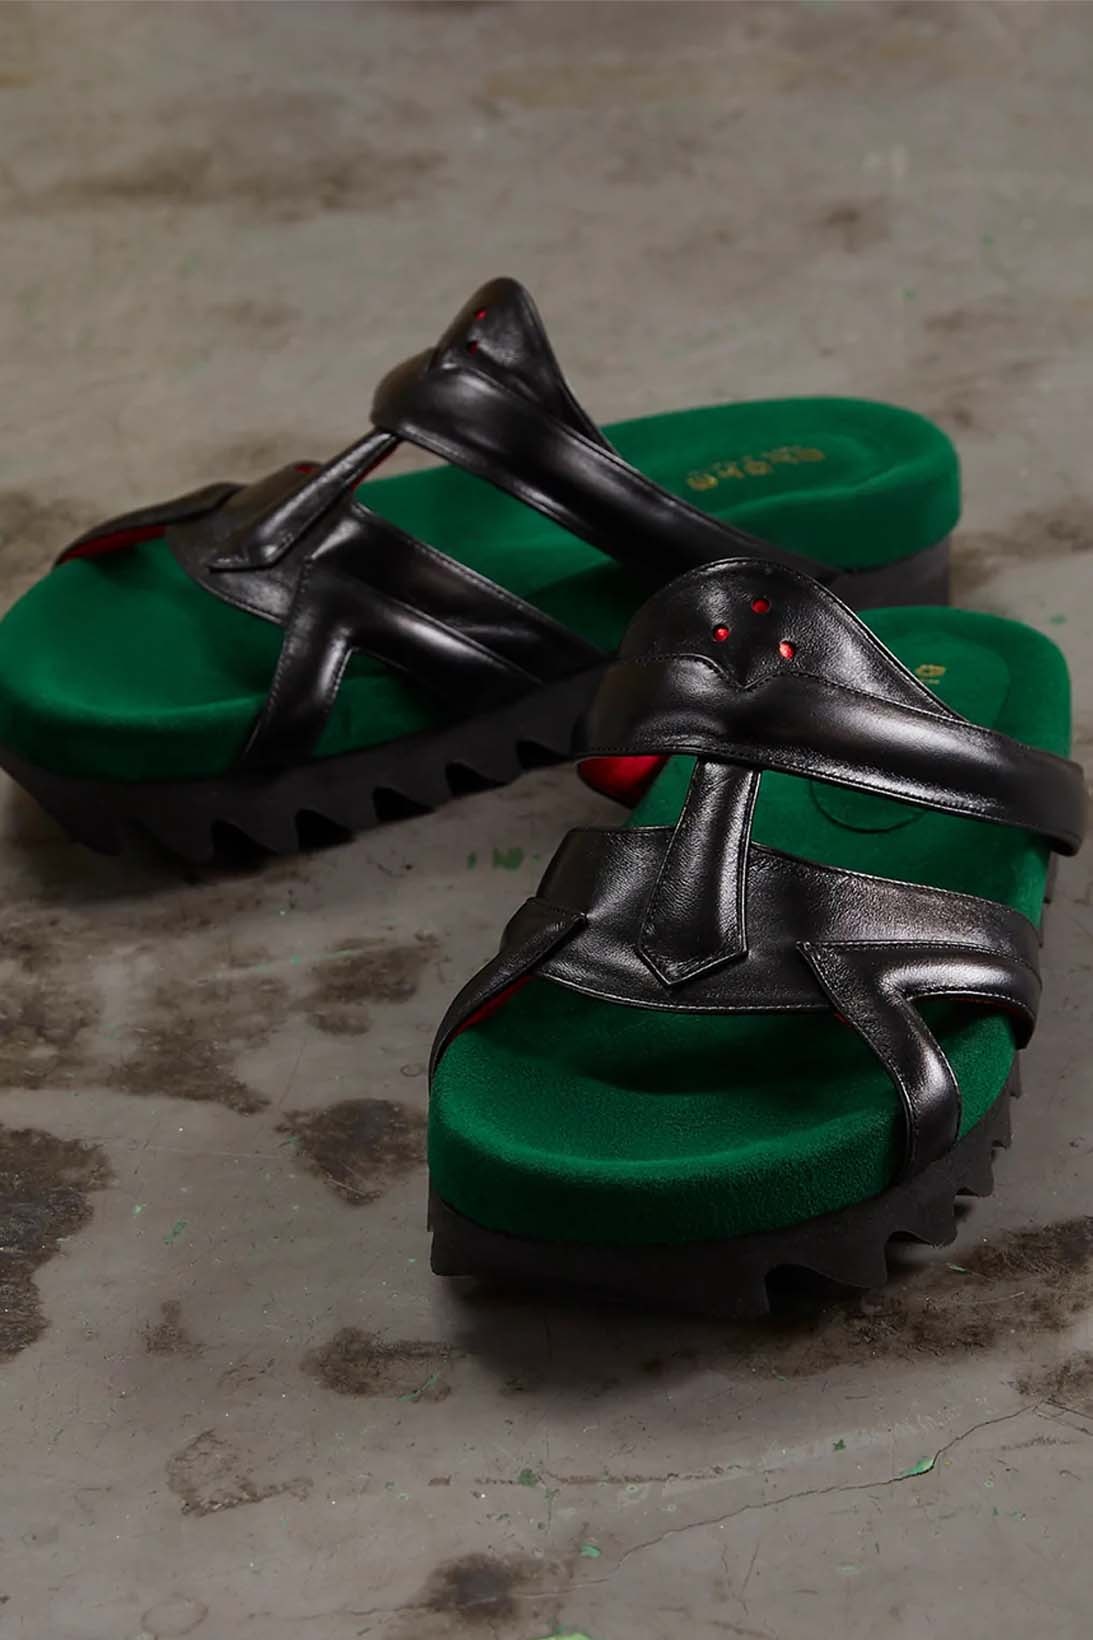 blohm tokyo mf doom green black silver slide sandal release date